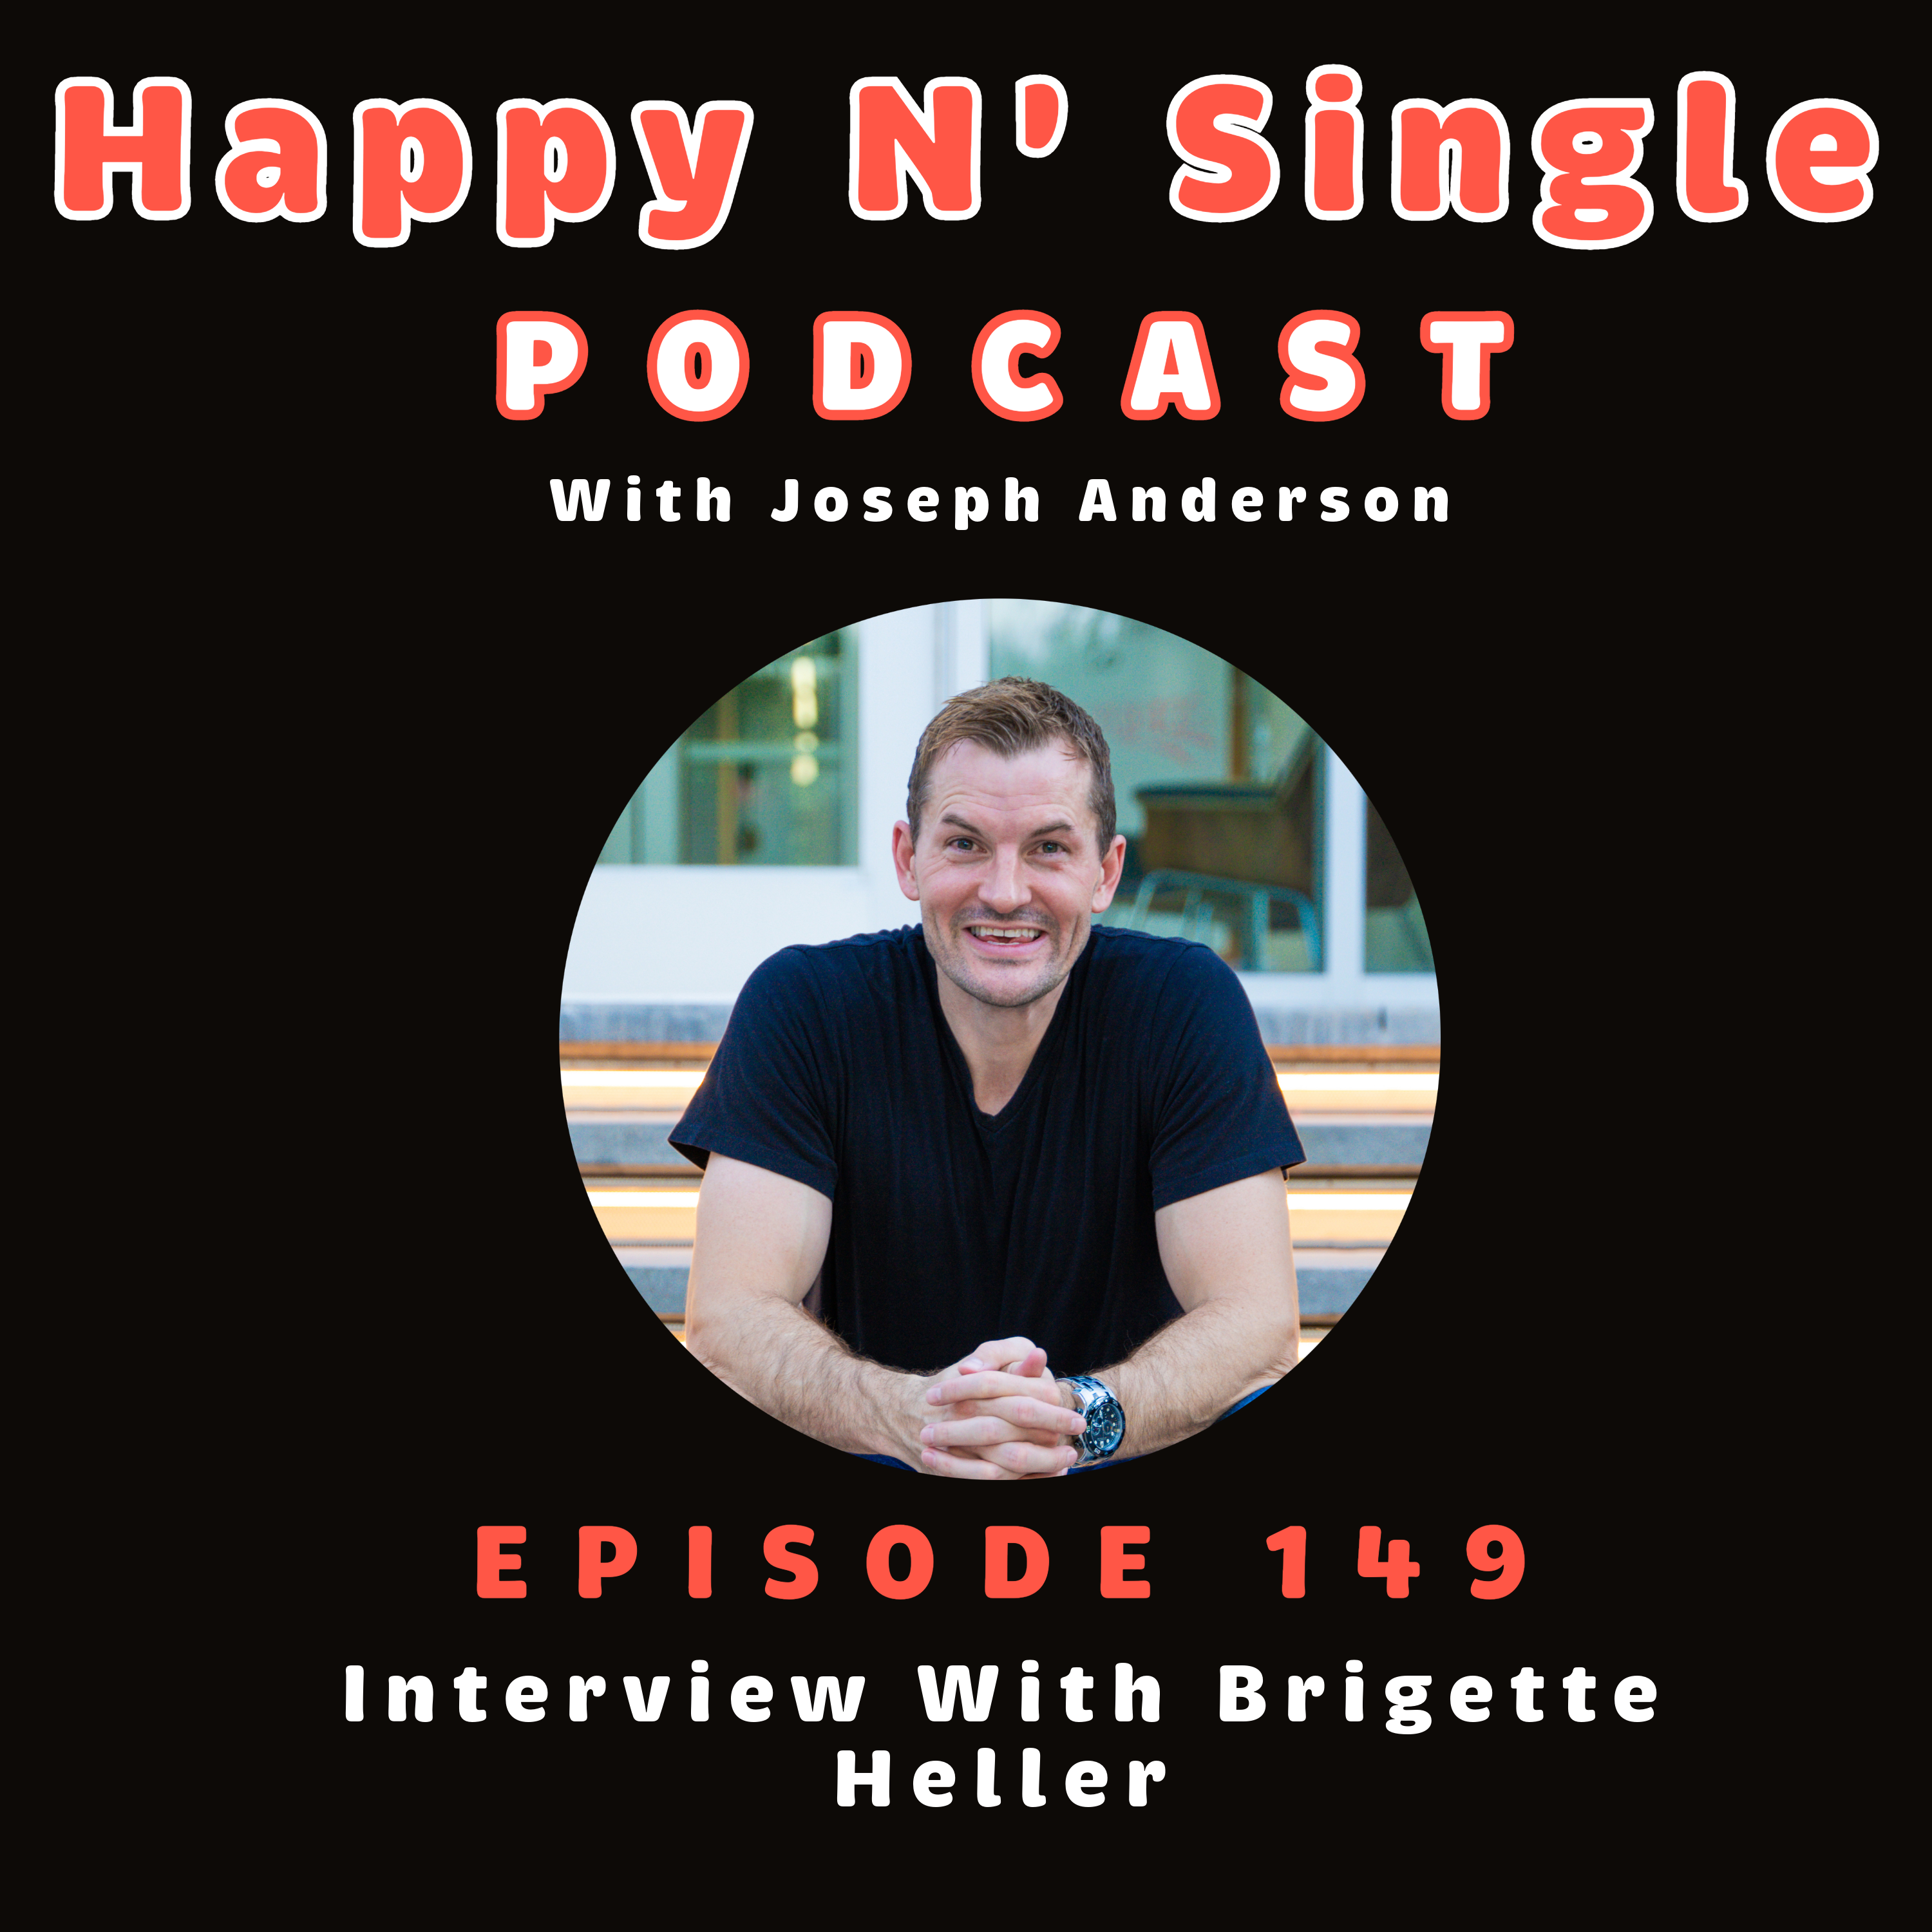 Interview With Brigette Heller